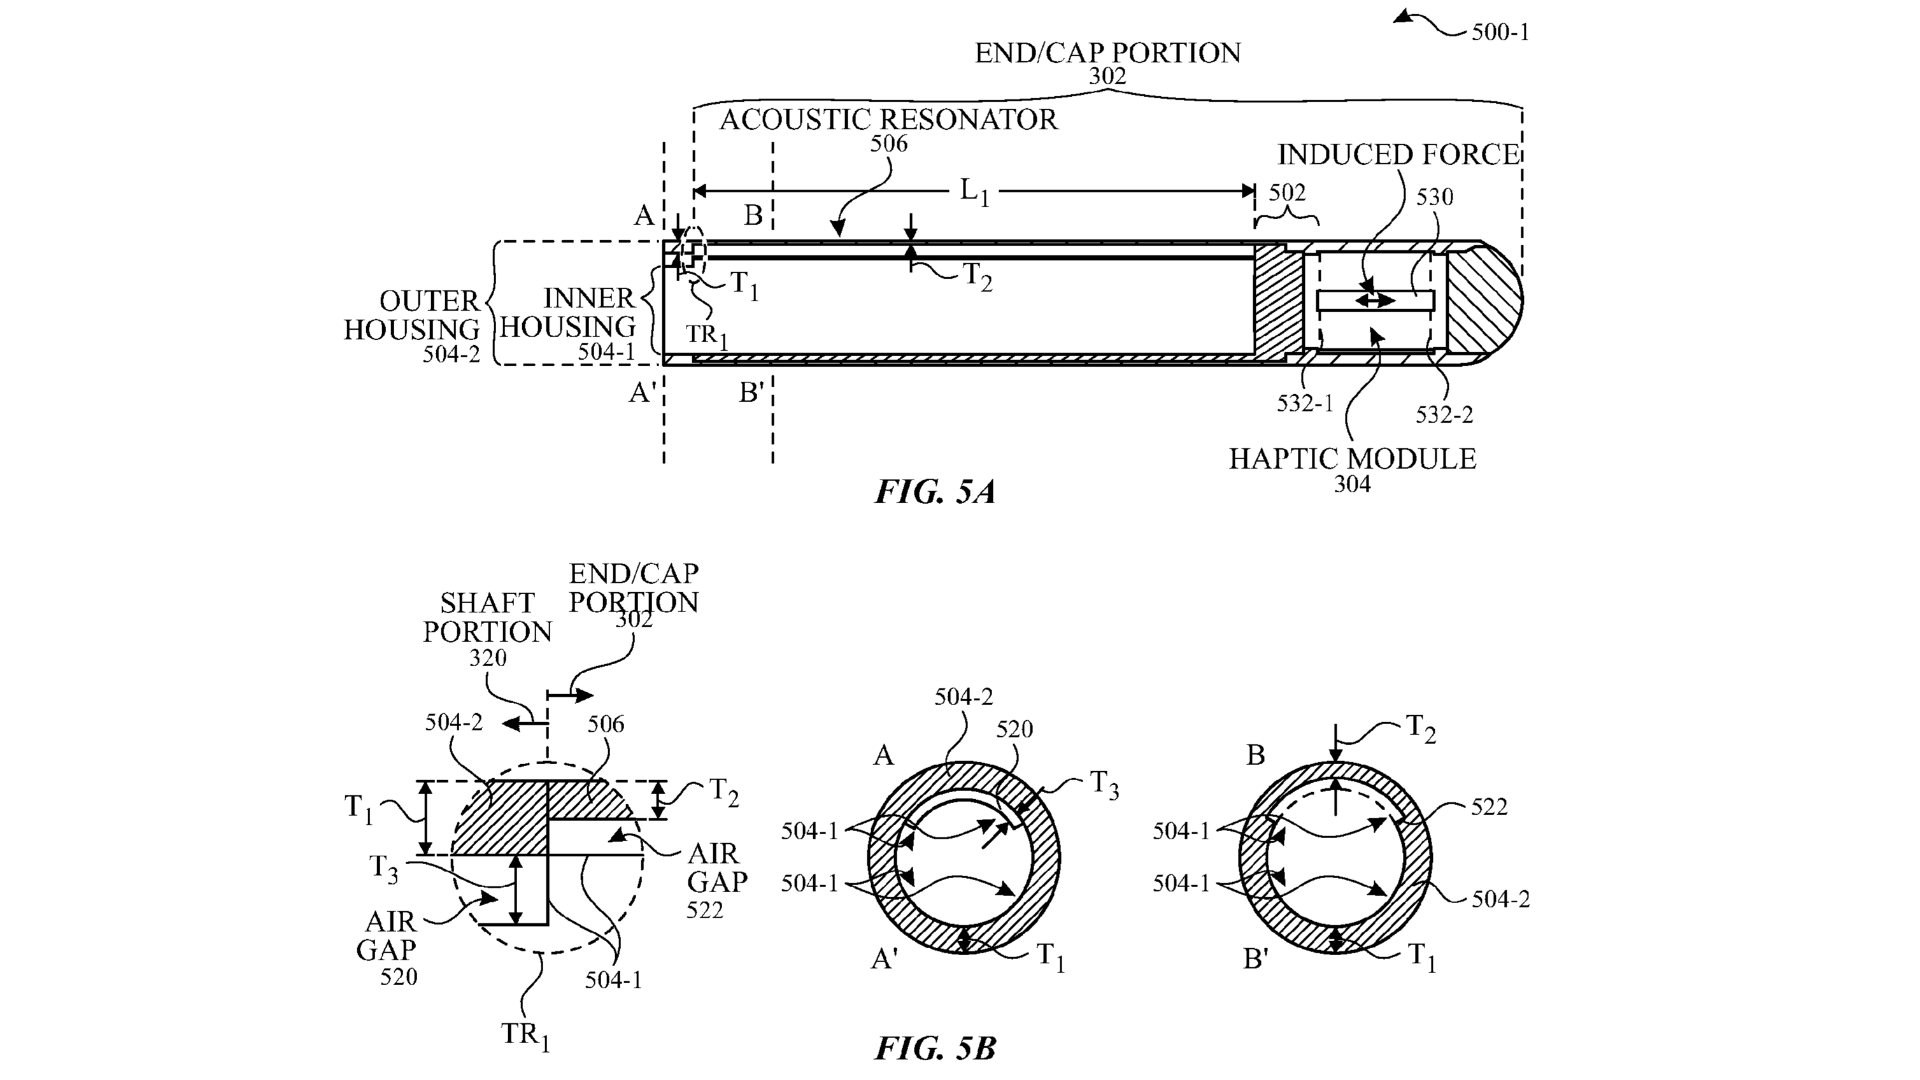 Patentový výkres znázorňující budoucí Apple Pencil s akustickým rezonátorem v uzávěru